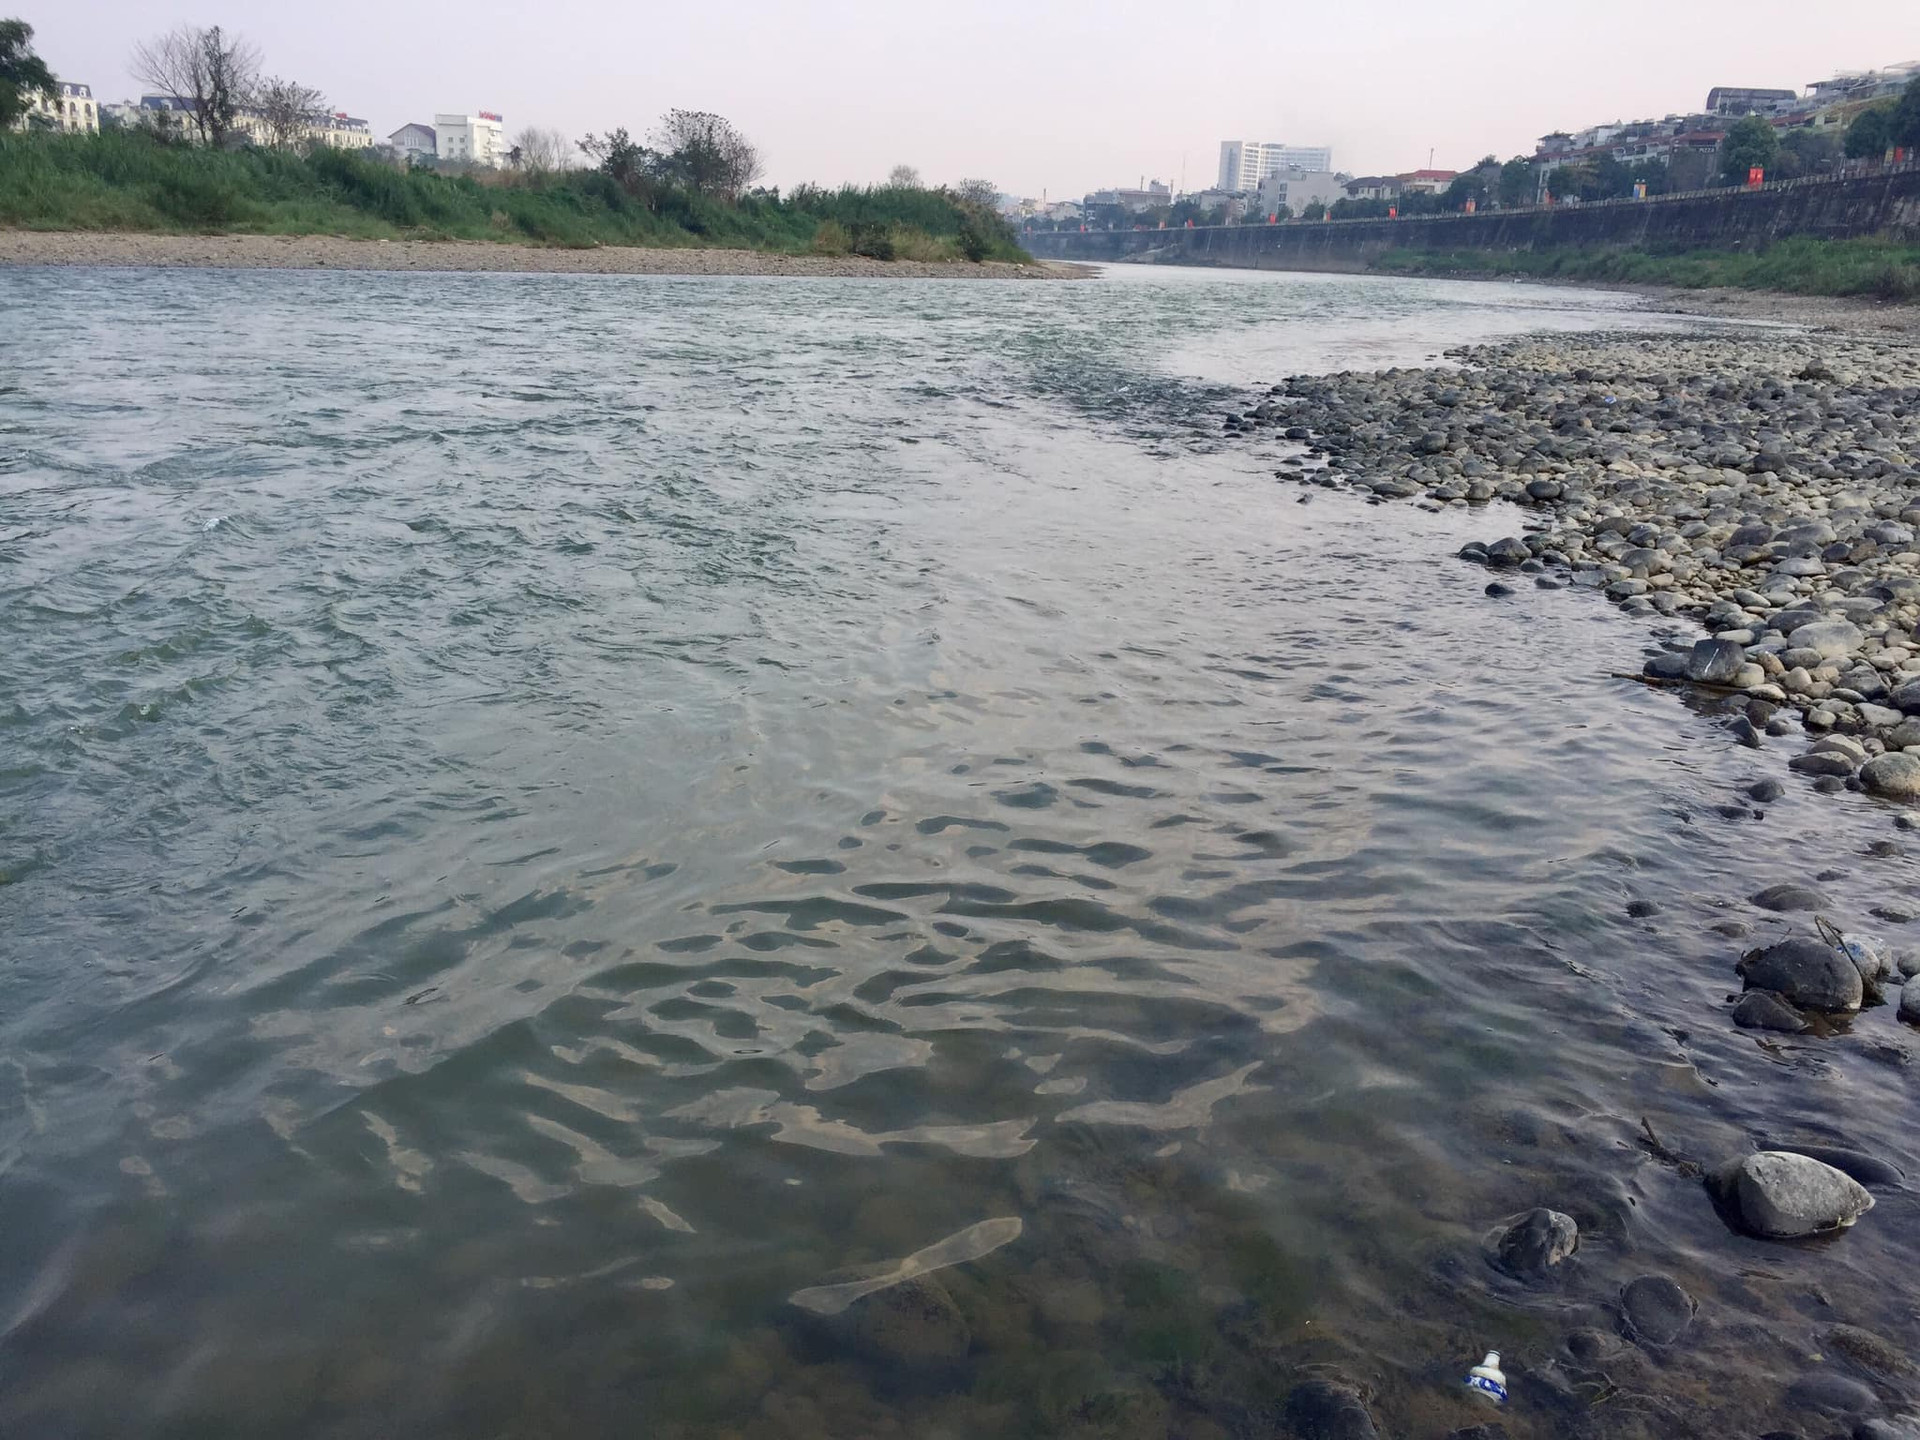 Một nhà báo ở tỉnh Lào Cai từng làm phim tài liệu về dòng sông Hồng phía thượng nguồn Trung Quốc cho rằng, phía nước bạn làm nhiều thủy điện trên sông này nên mùa khô các nhà máy thủy điện xả nước, khiến nước sông thường có màu xanh.